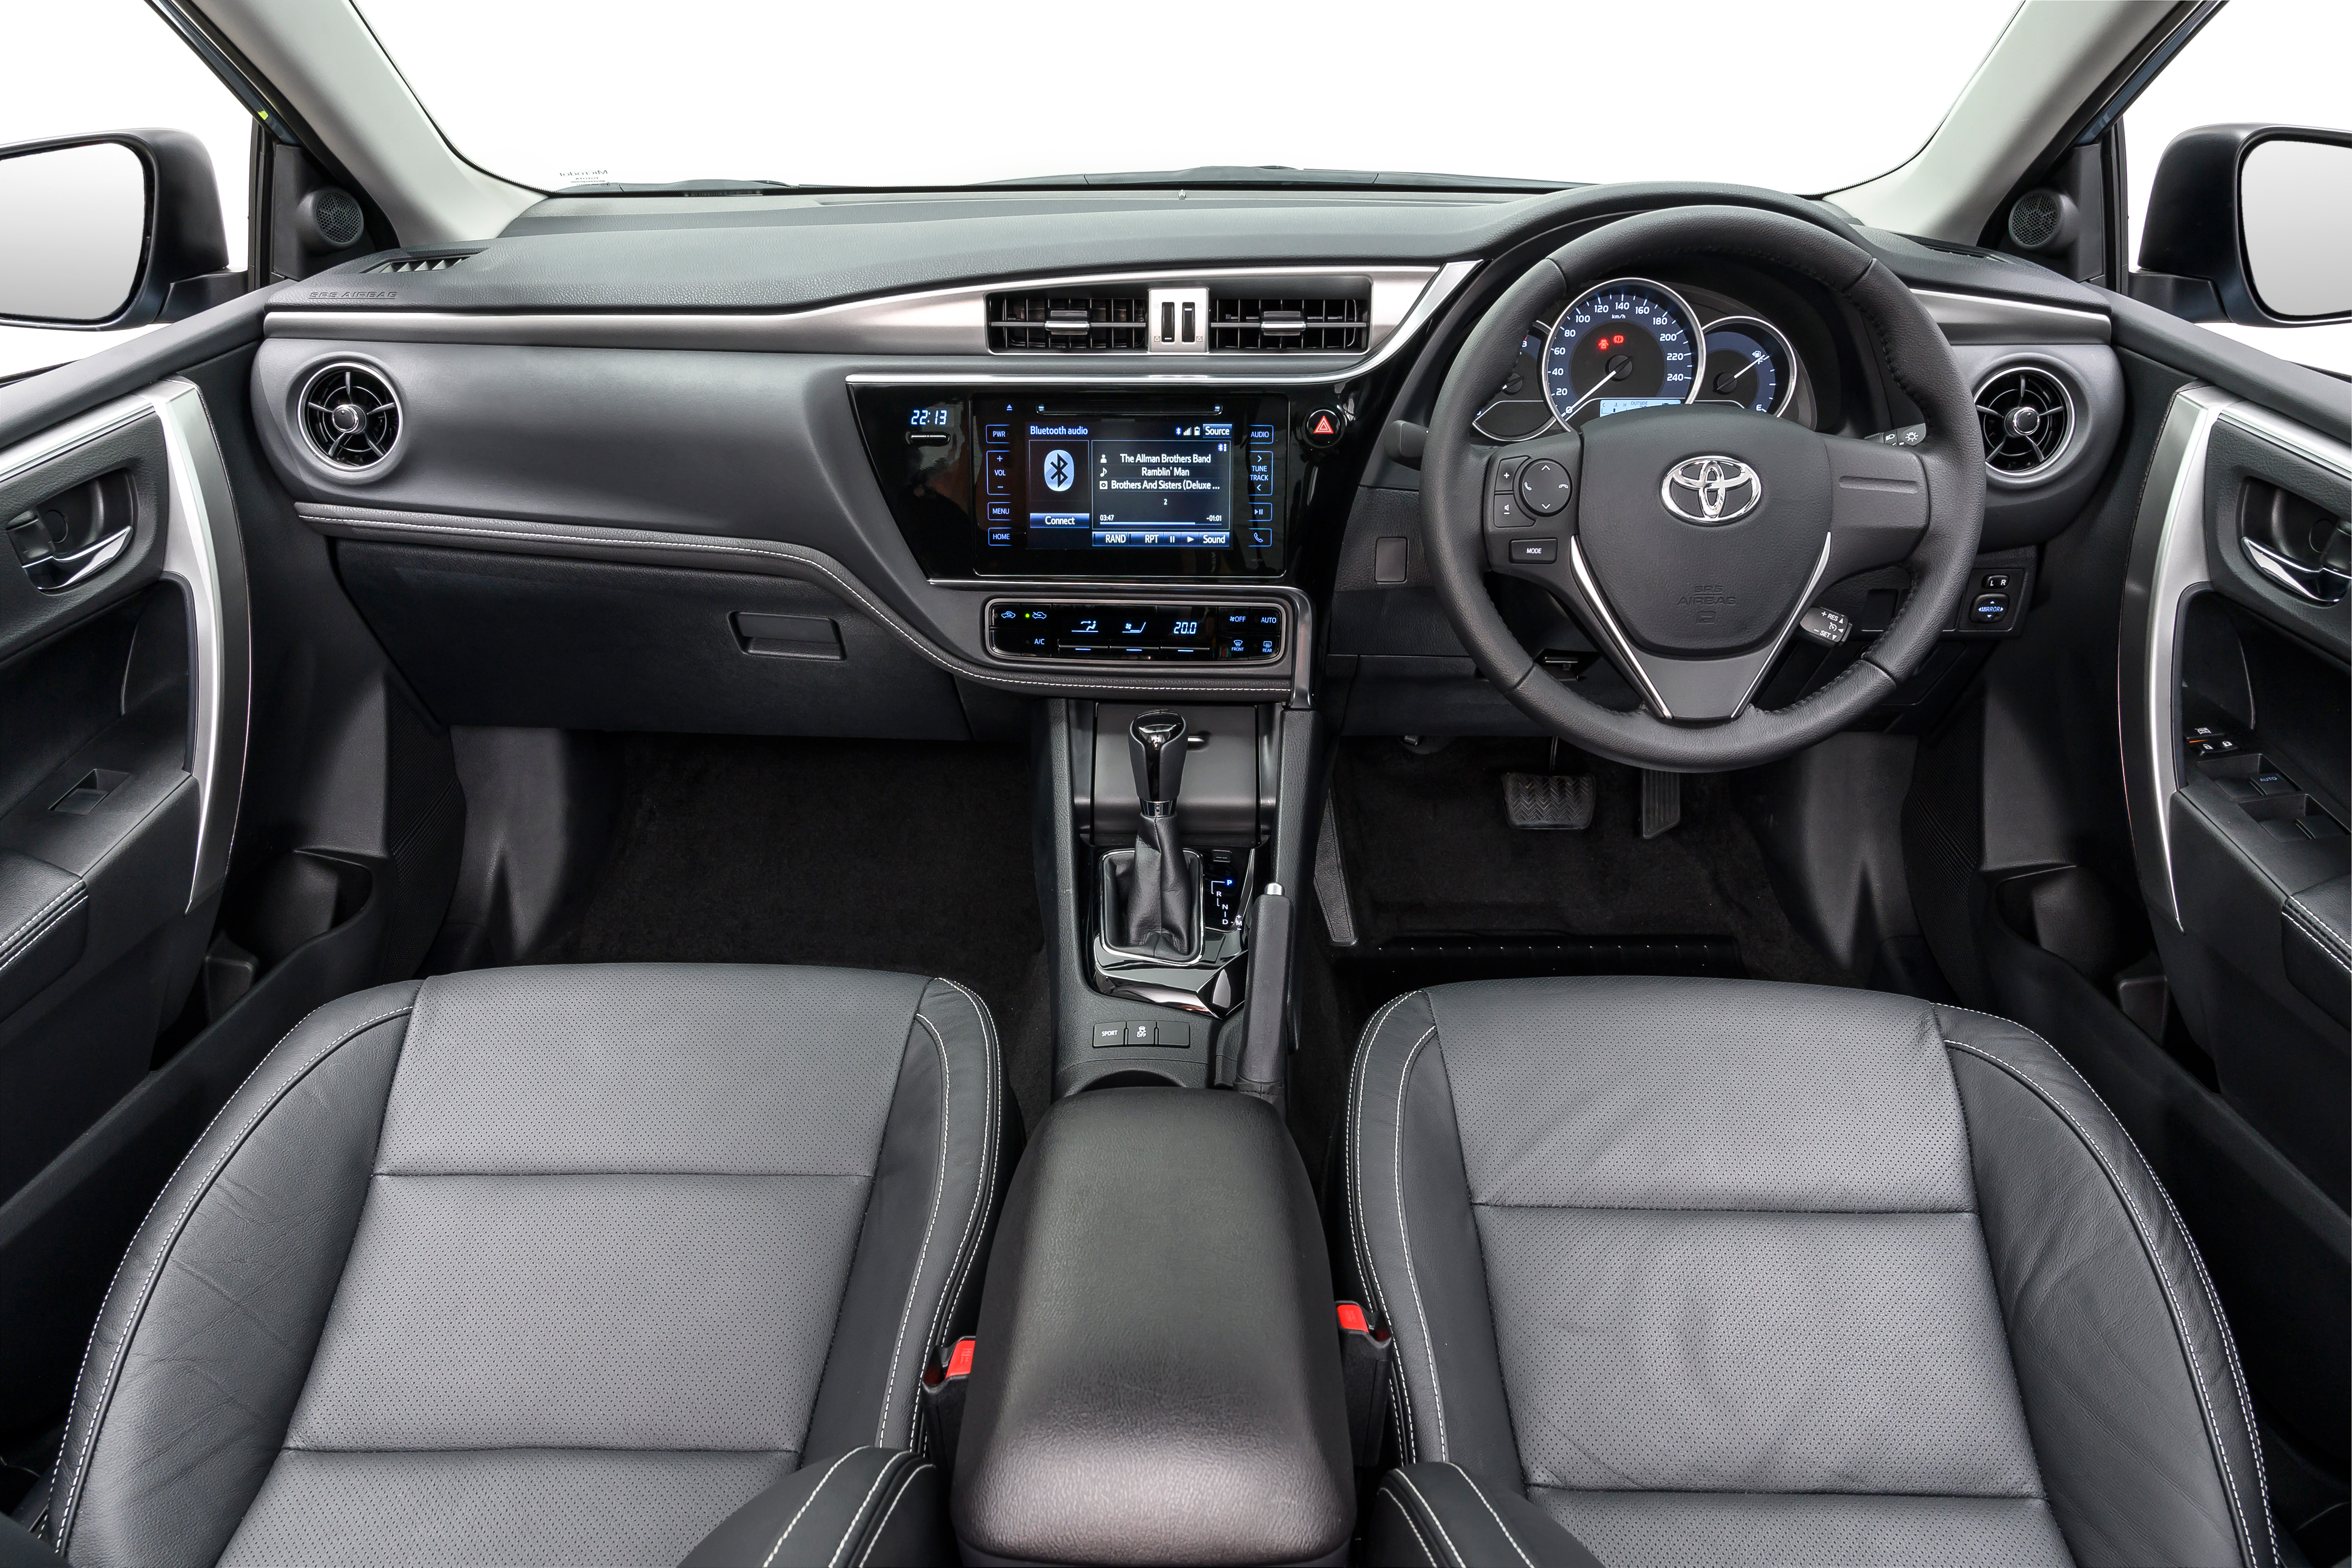 Toyota Corolla Quest interior view